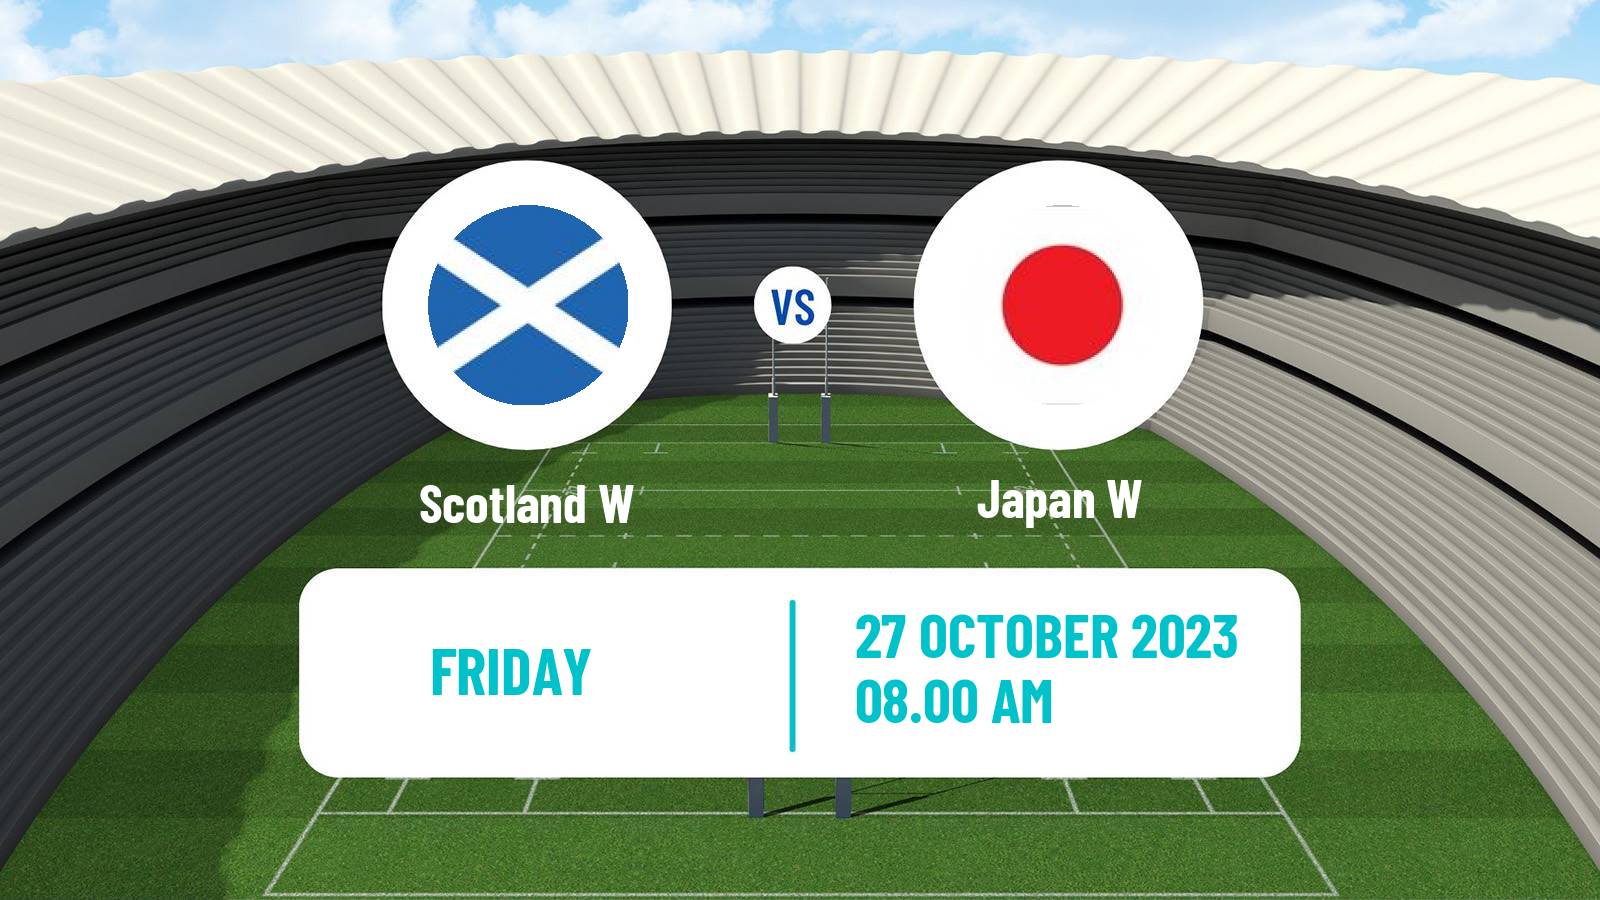 Rugby union WXV 2 Rugby Women Scotland W - Japan W